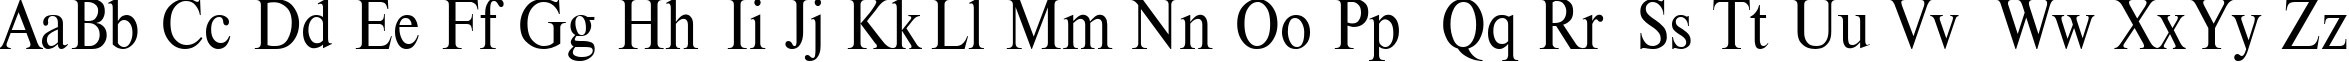 Пример написания английского алфавита шрифтом TimesET 85